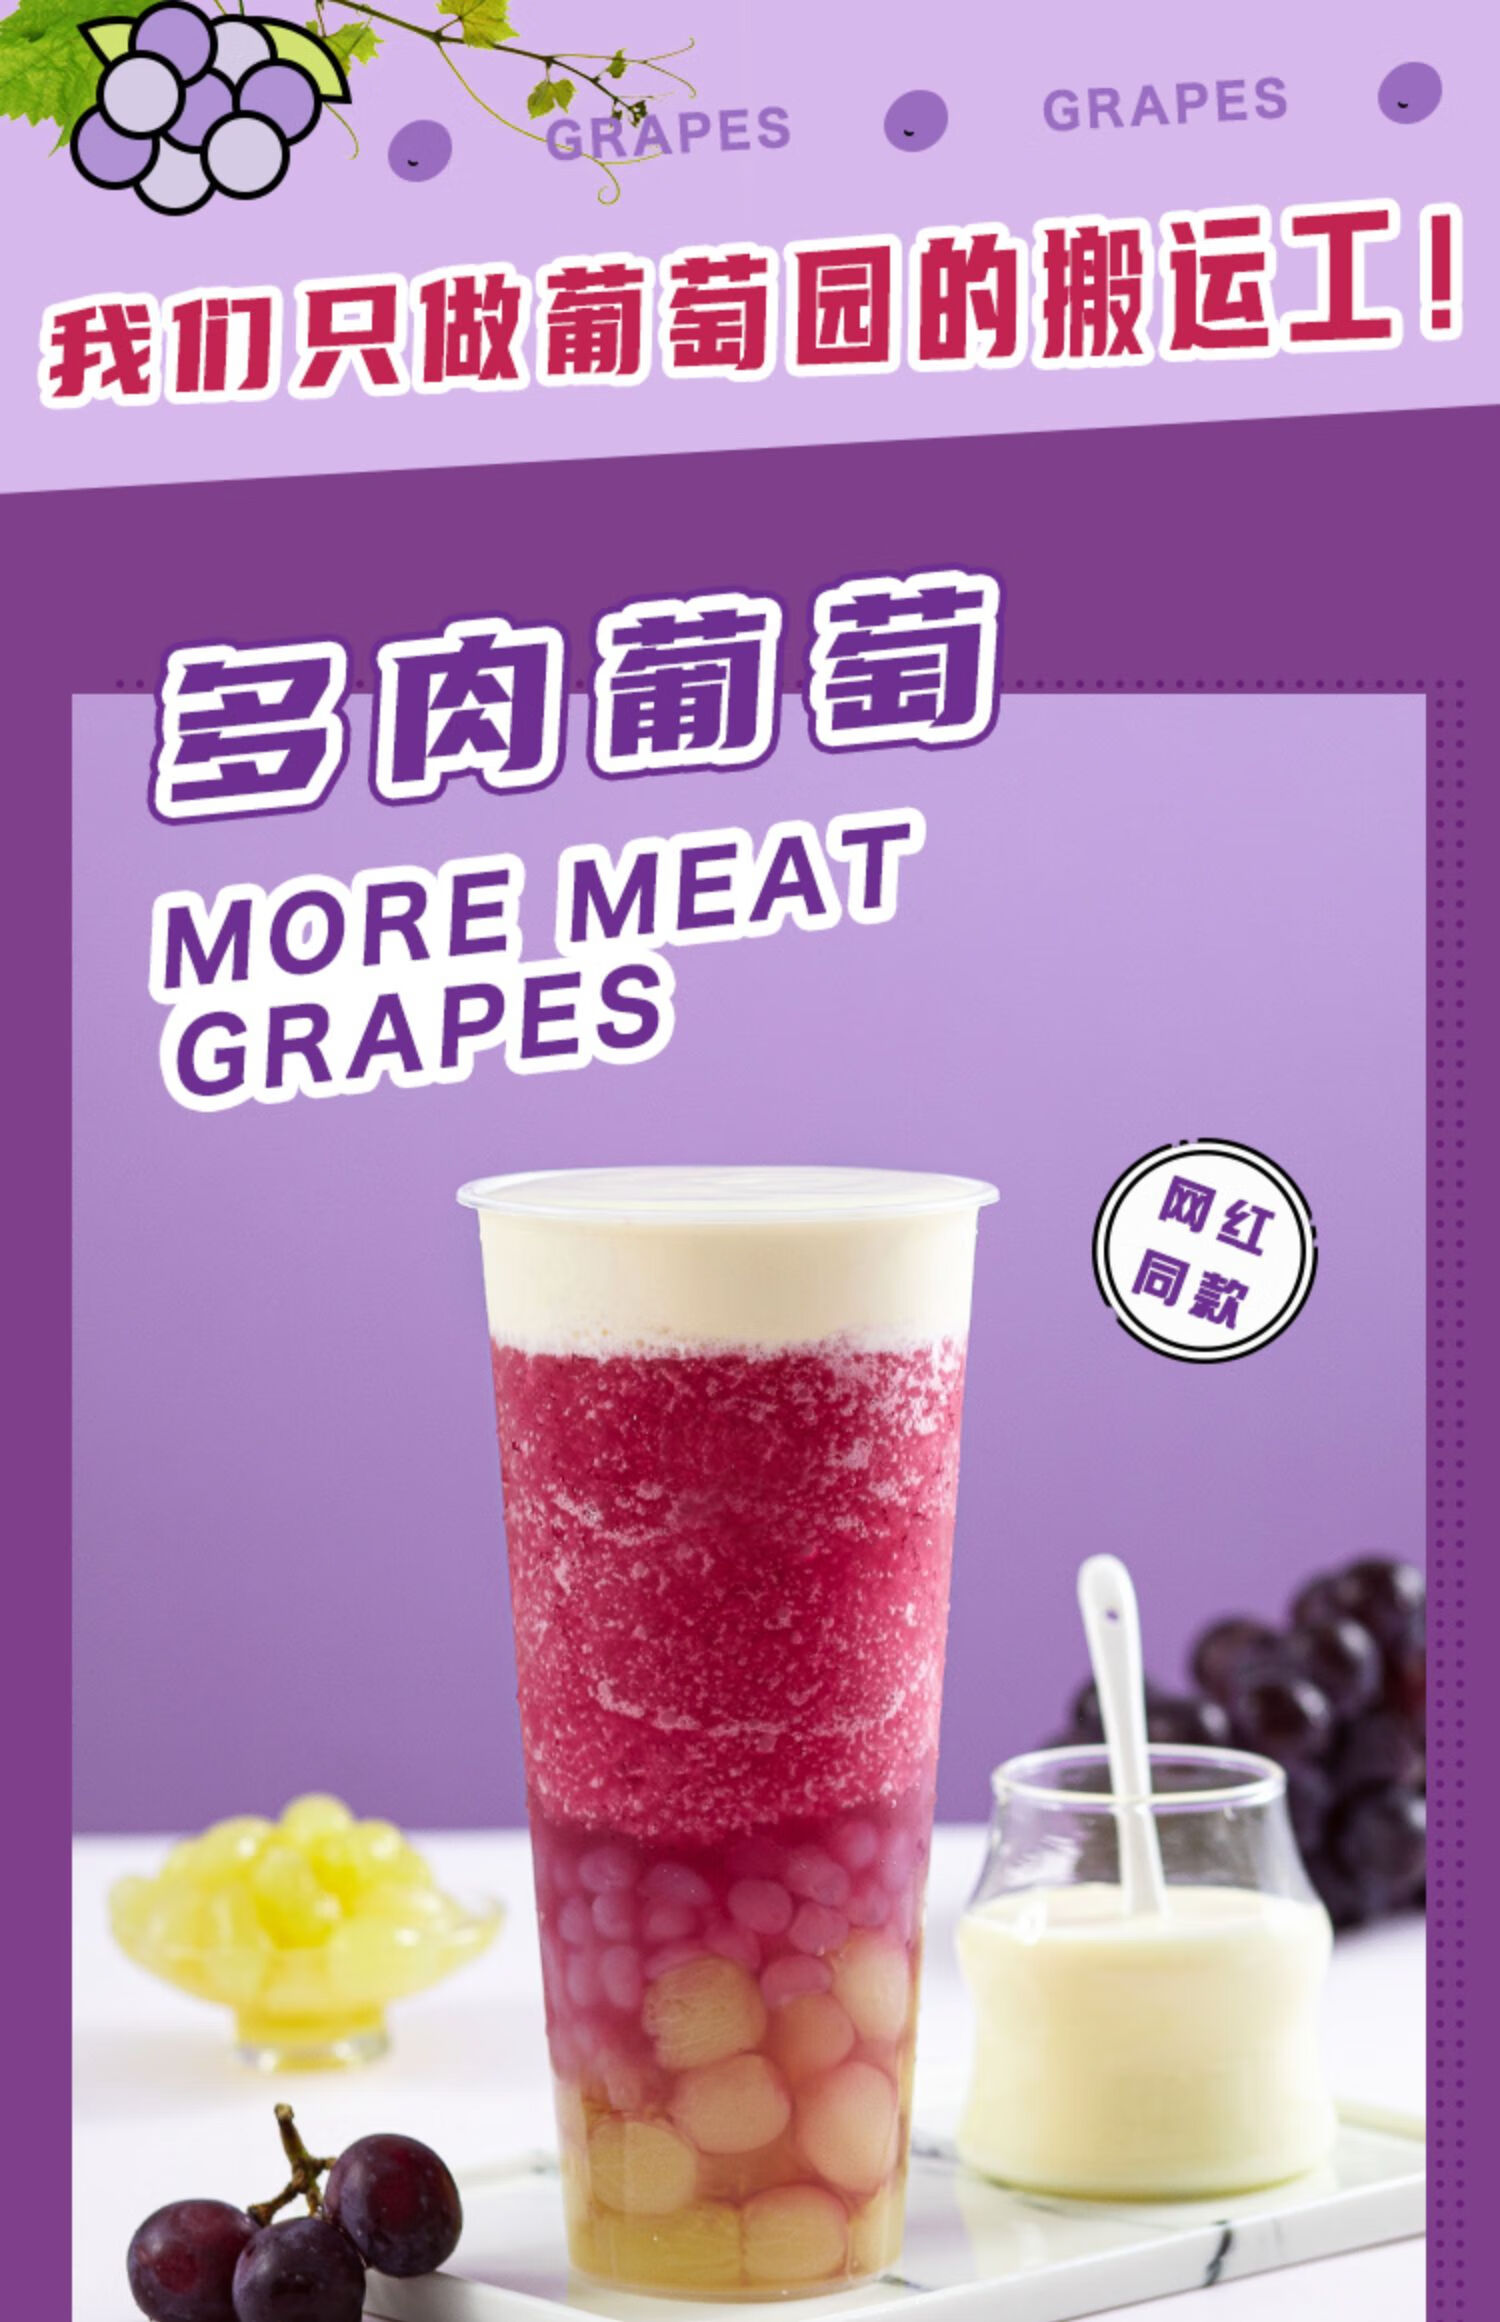 糖水葡萄罐头850g 多肉葡萄青提果肉新鲜水果奶茶店专用原料 红西柚